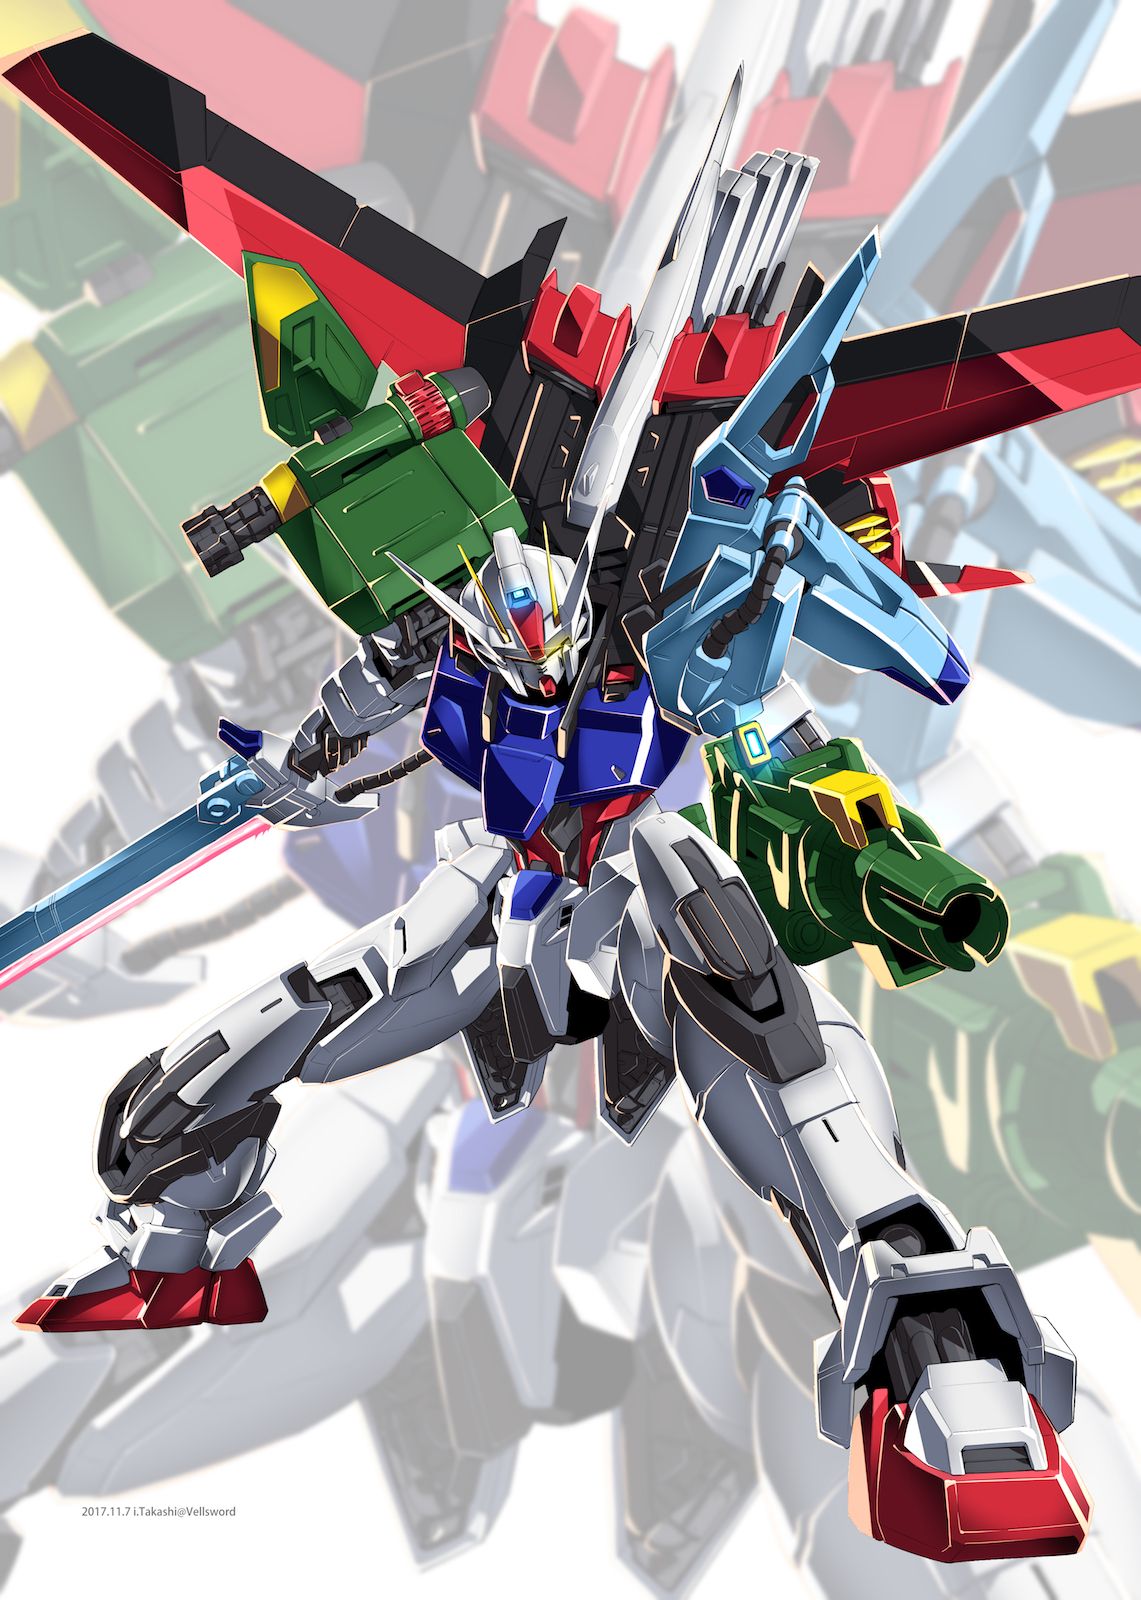 Perfect Strike Gundam Gundam wallpapers Gundam art Gundam